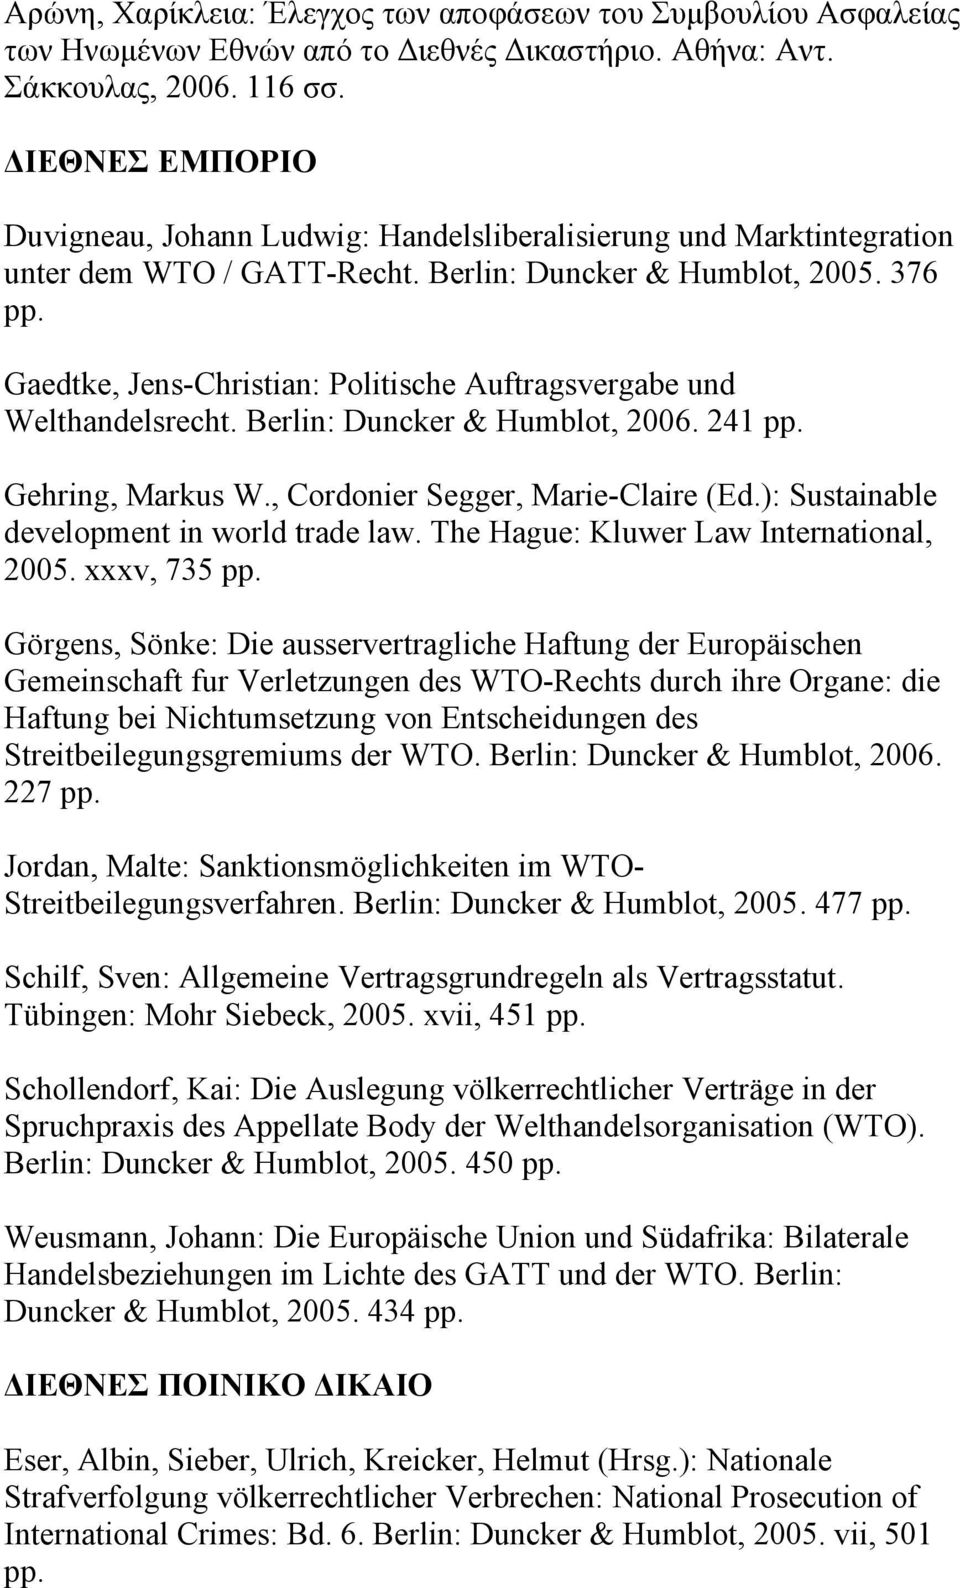 Gaedtke, Jens-Christian: Politische Auftragsvergabe und Welthandelsrecht. Berlin: Duncker & Humblot, 2006. 241 pp. Gehring, Markus W., Cordonier Segger, Marie-Claire (Ed.